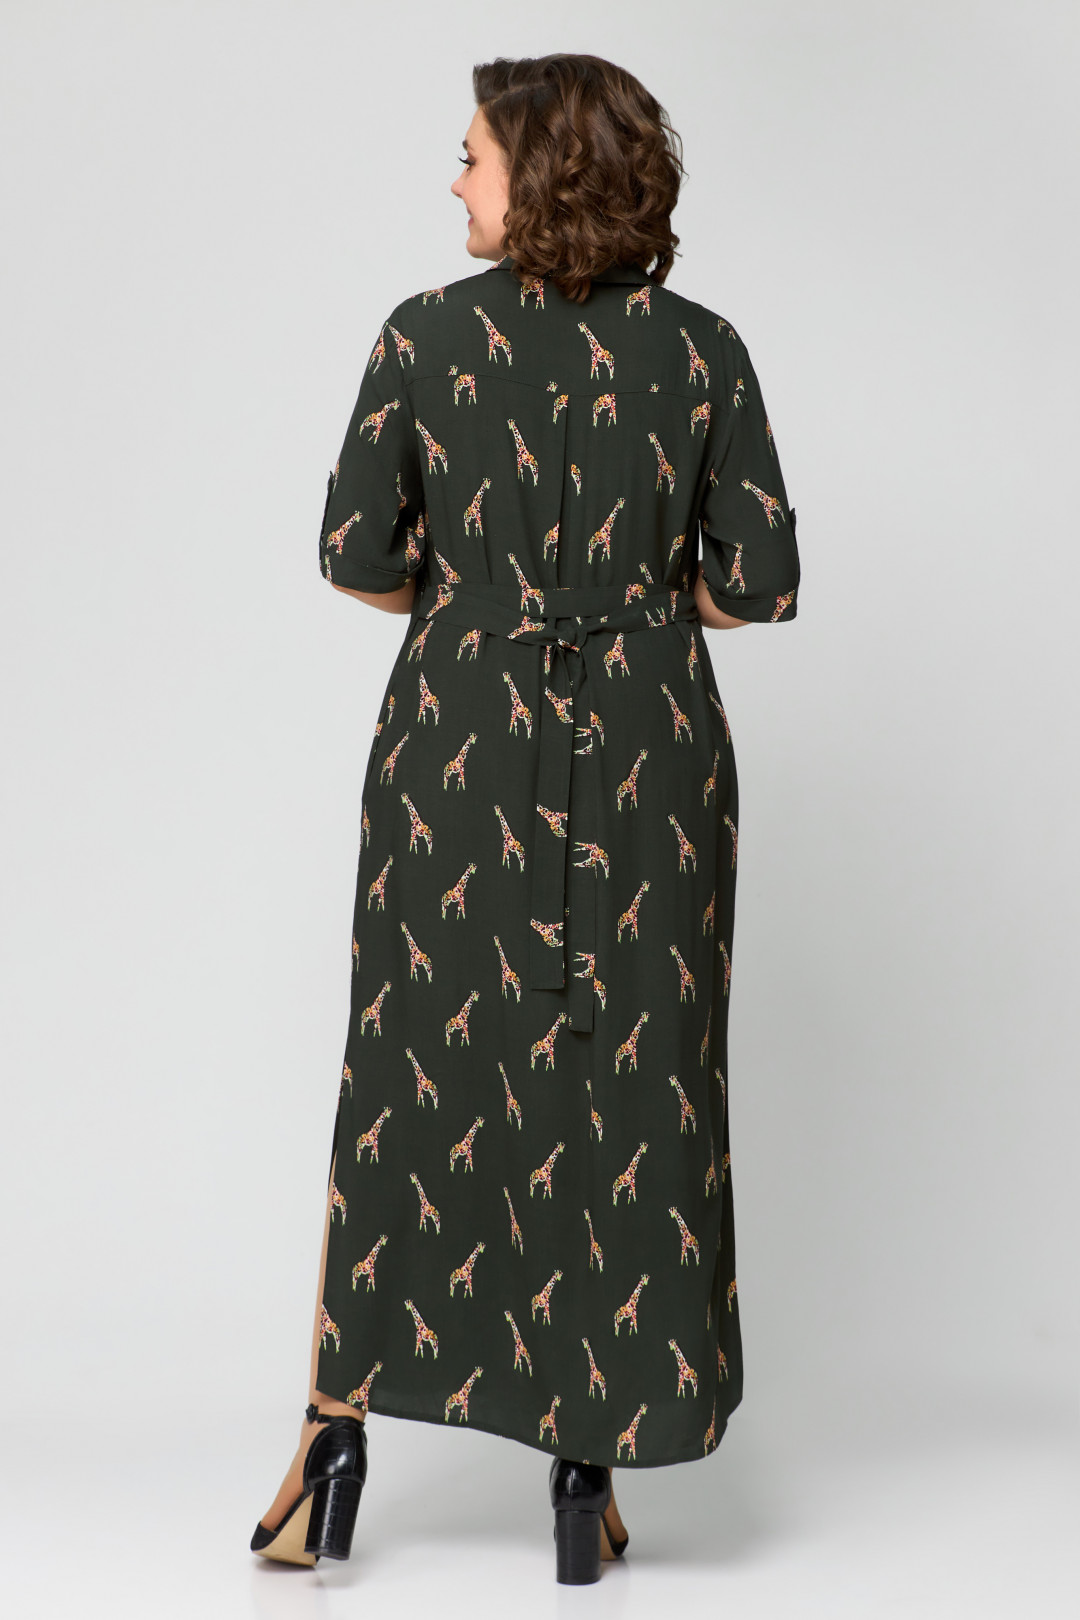 Платье Светлана-Стиль 1930 олива+принт